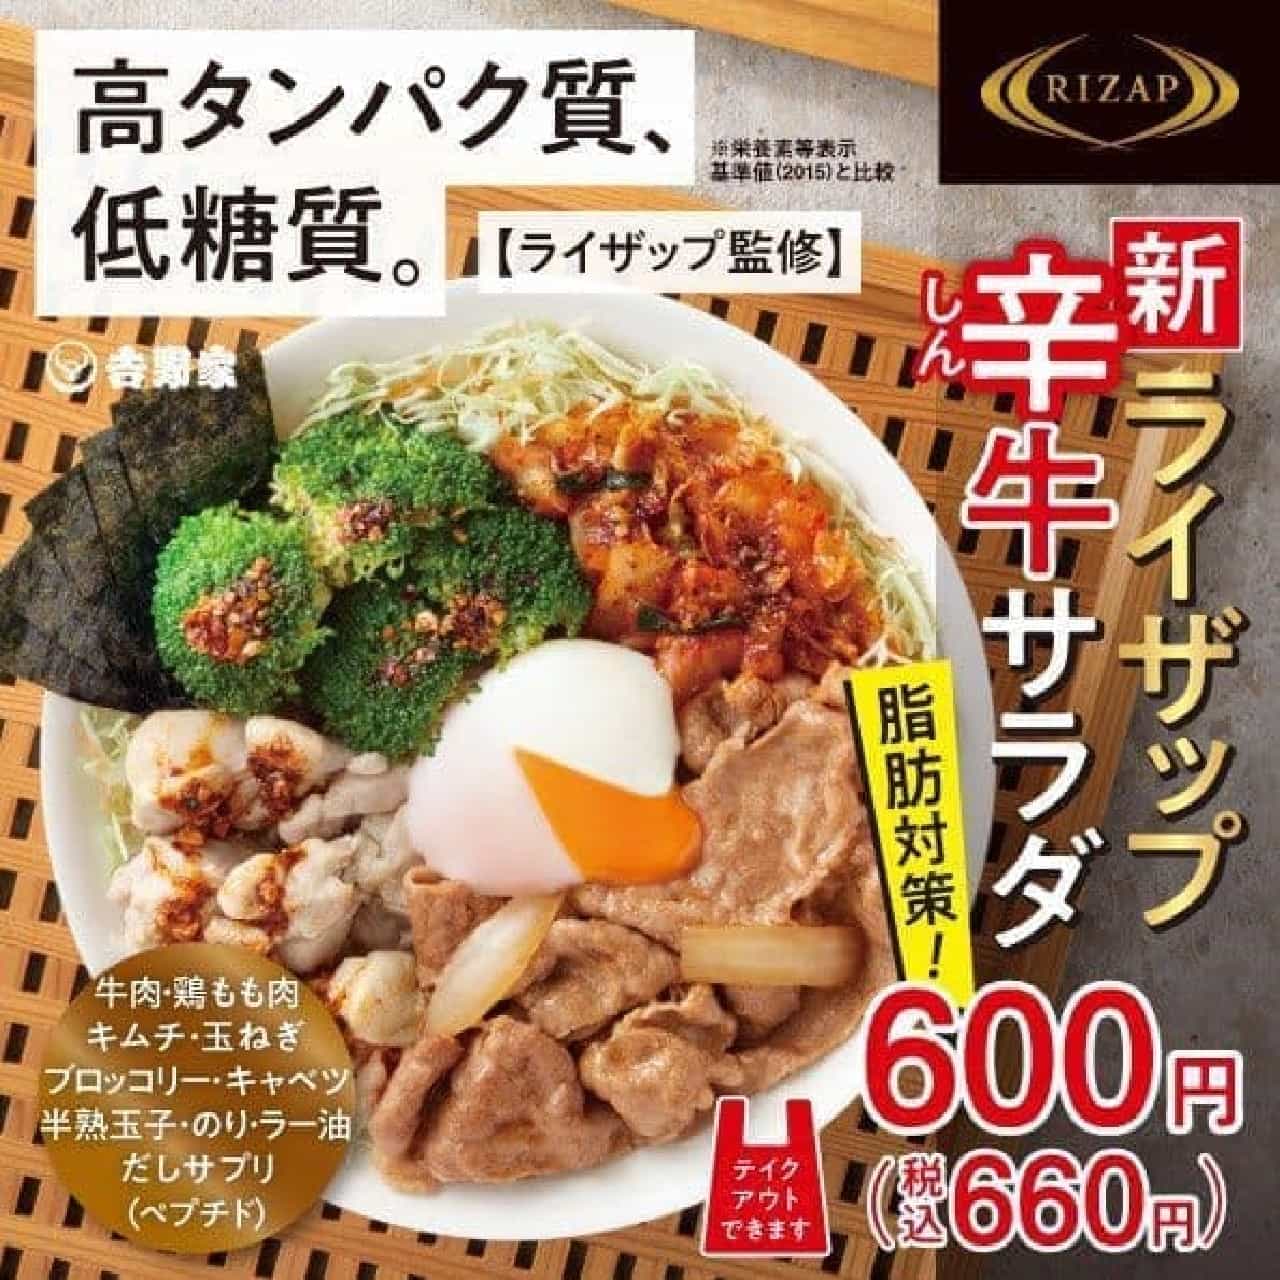 Yoshinoya "Rizap Spicy Beef Salad"